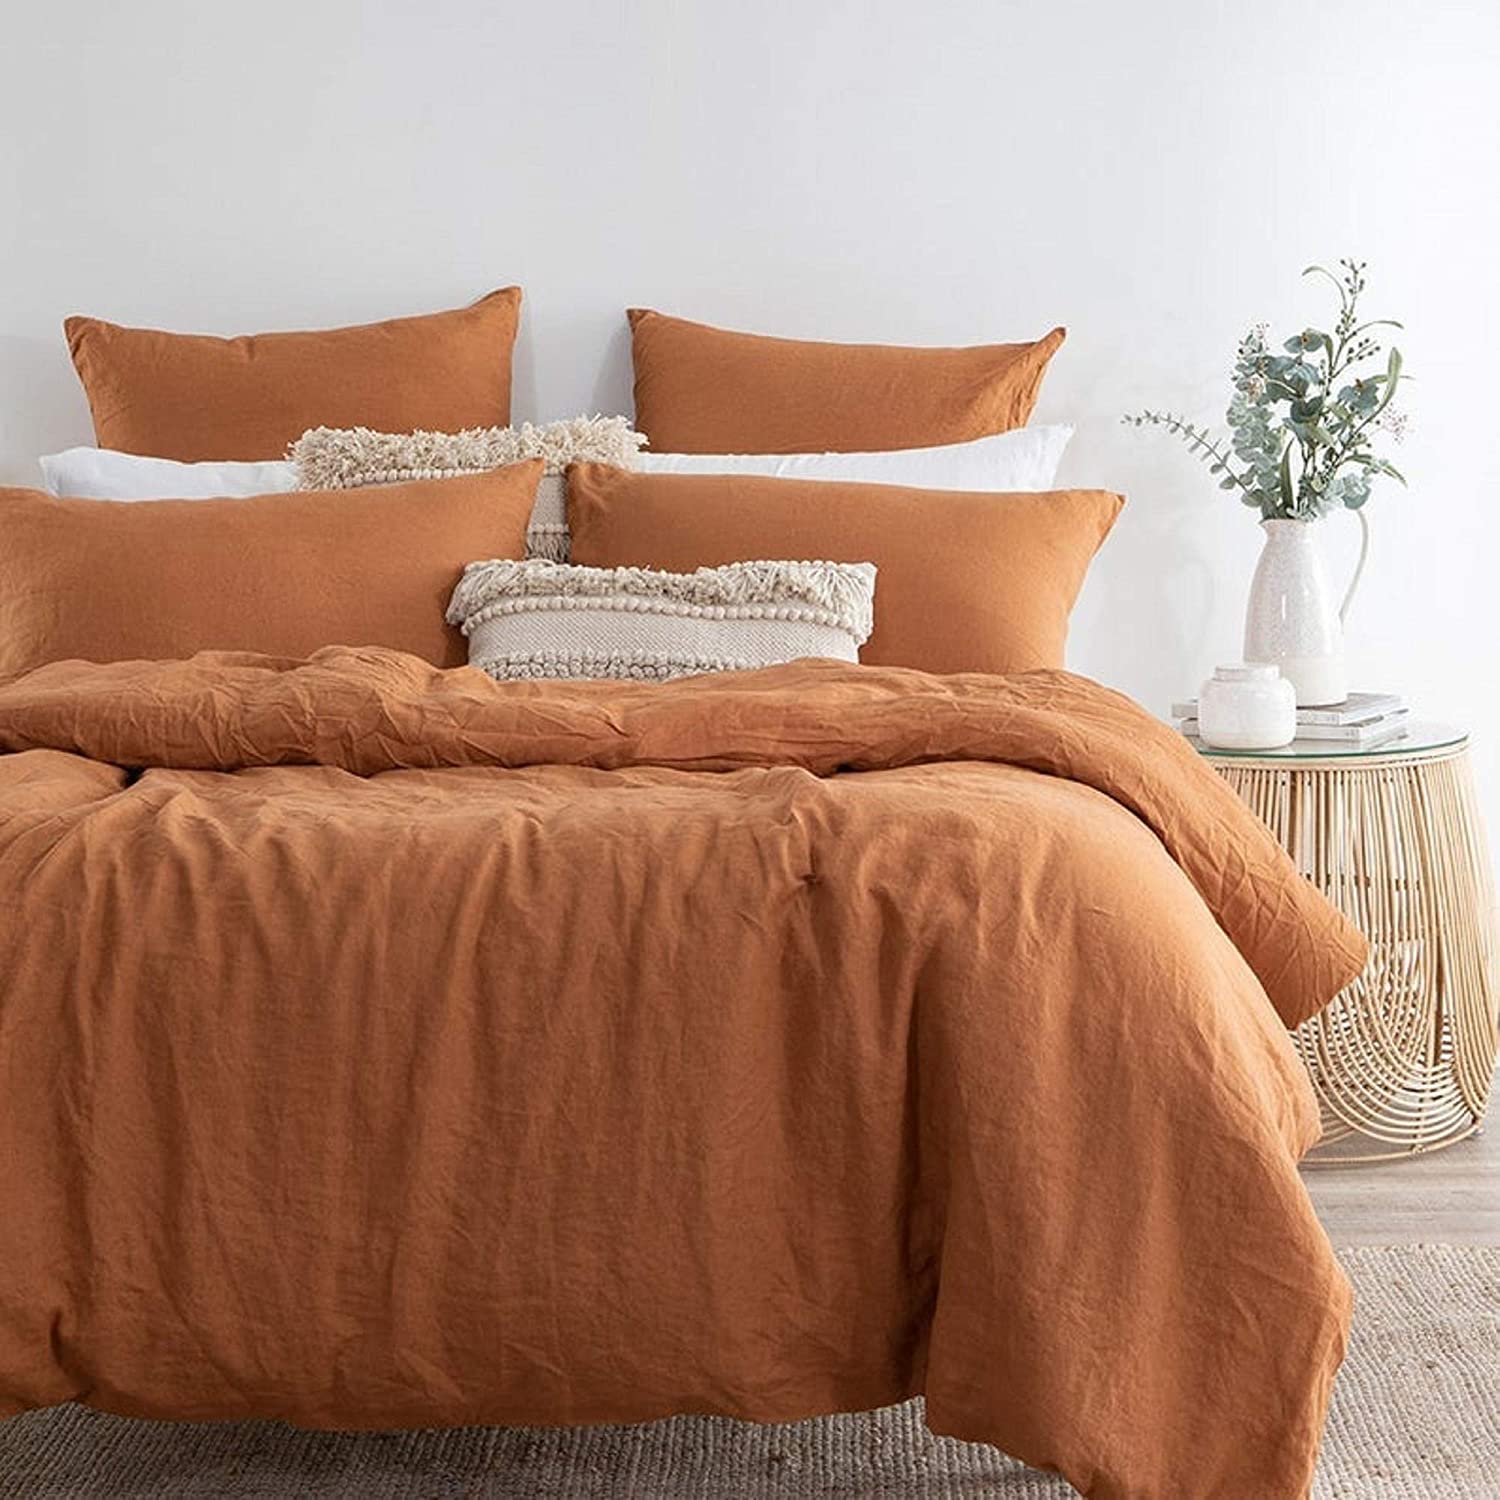 orange bedding idea